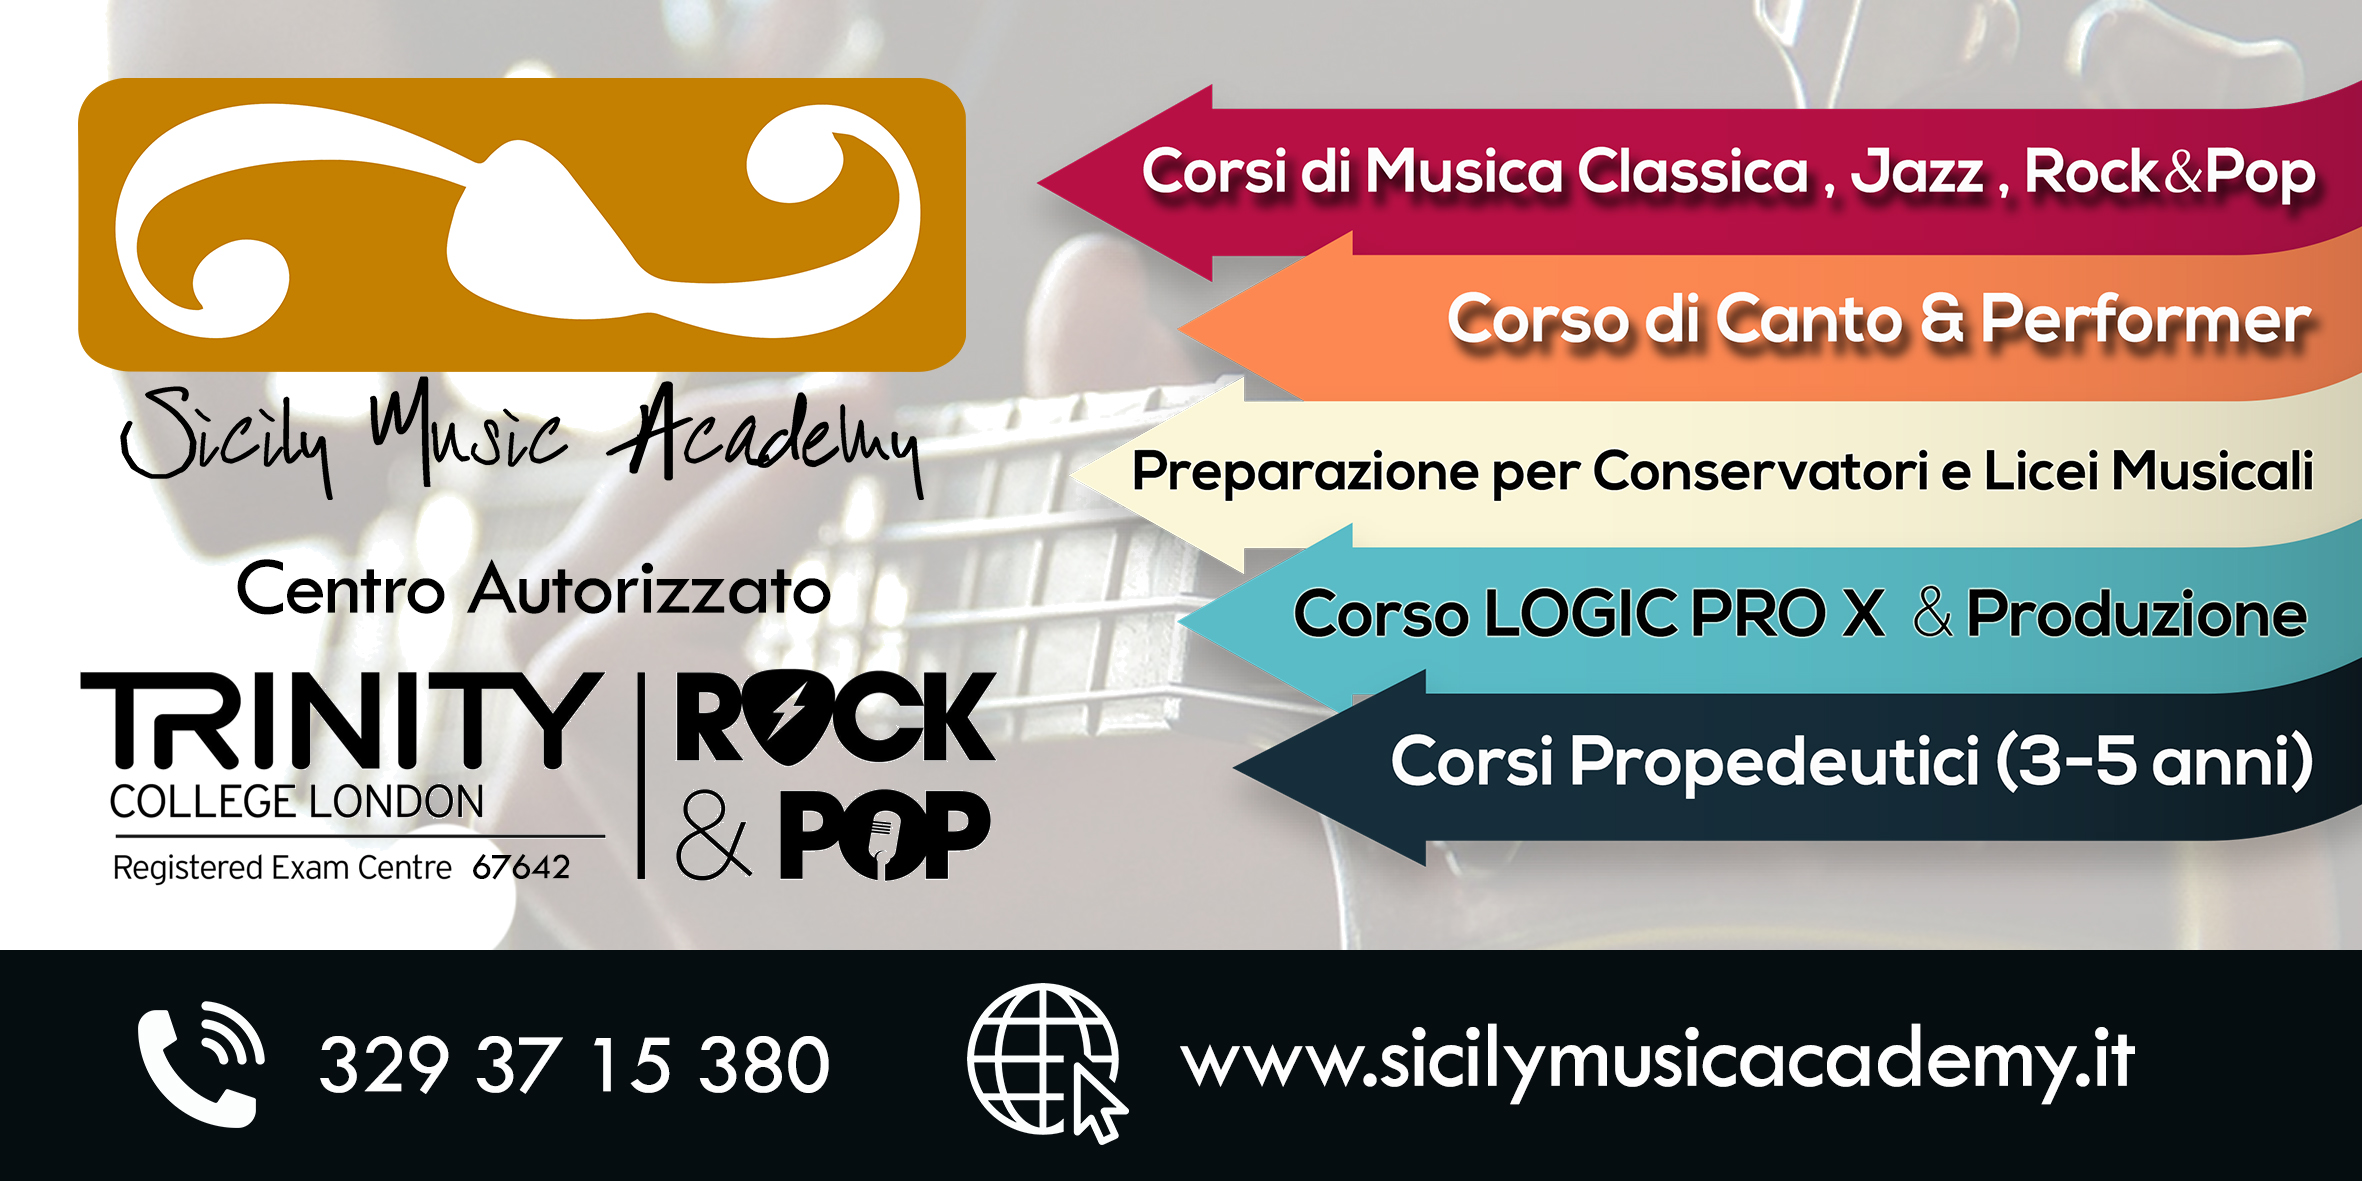 Sicily Music Academy: aperte le iscrizioni per l’anno accademico 2022-2023